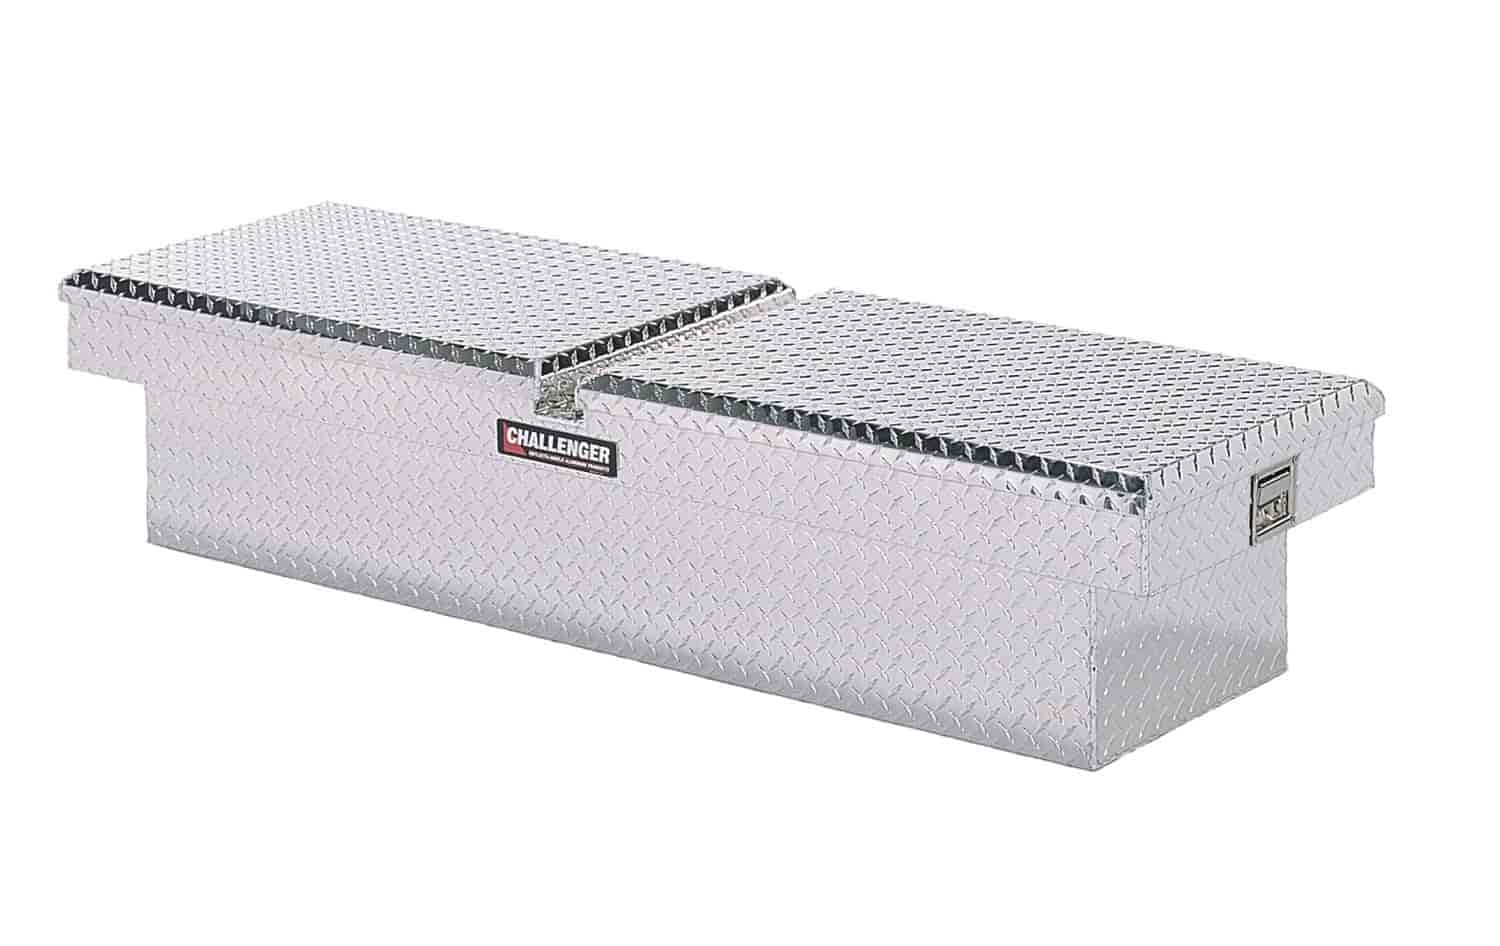 Cross Bed Tool Box Foam Filled Single Lid